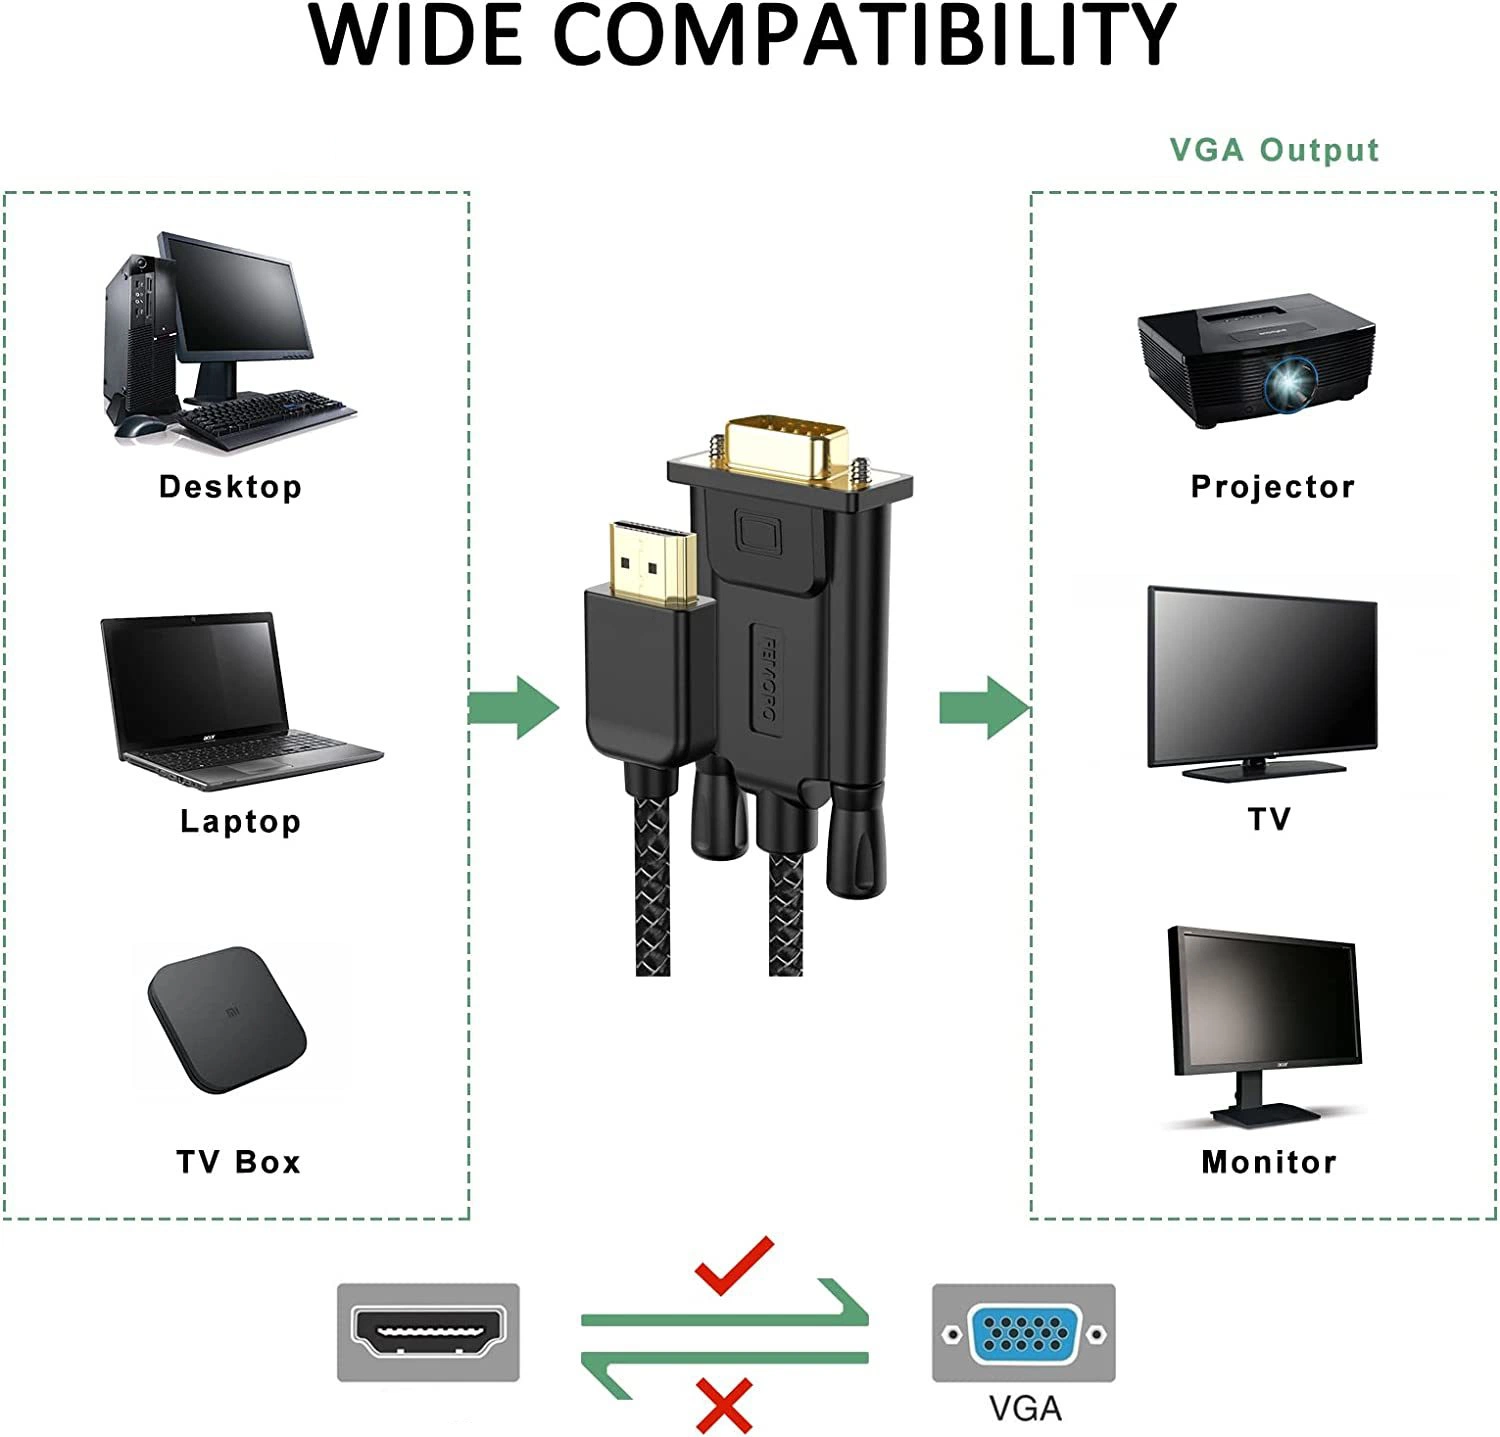 كابل HD إلى VGA بطول 6 أقدام ذكر إلى ذكر مضفر بدقة 1080P@60Hz للشاشة، الكمبيوتر، سطح المكتب، الكمبيوتر المحمول، الحاسوب، البروجيكتور، التلفزيون عالي الوضوح، الألعاب وأكثر من ذلك.